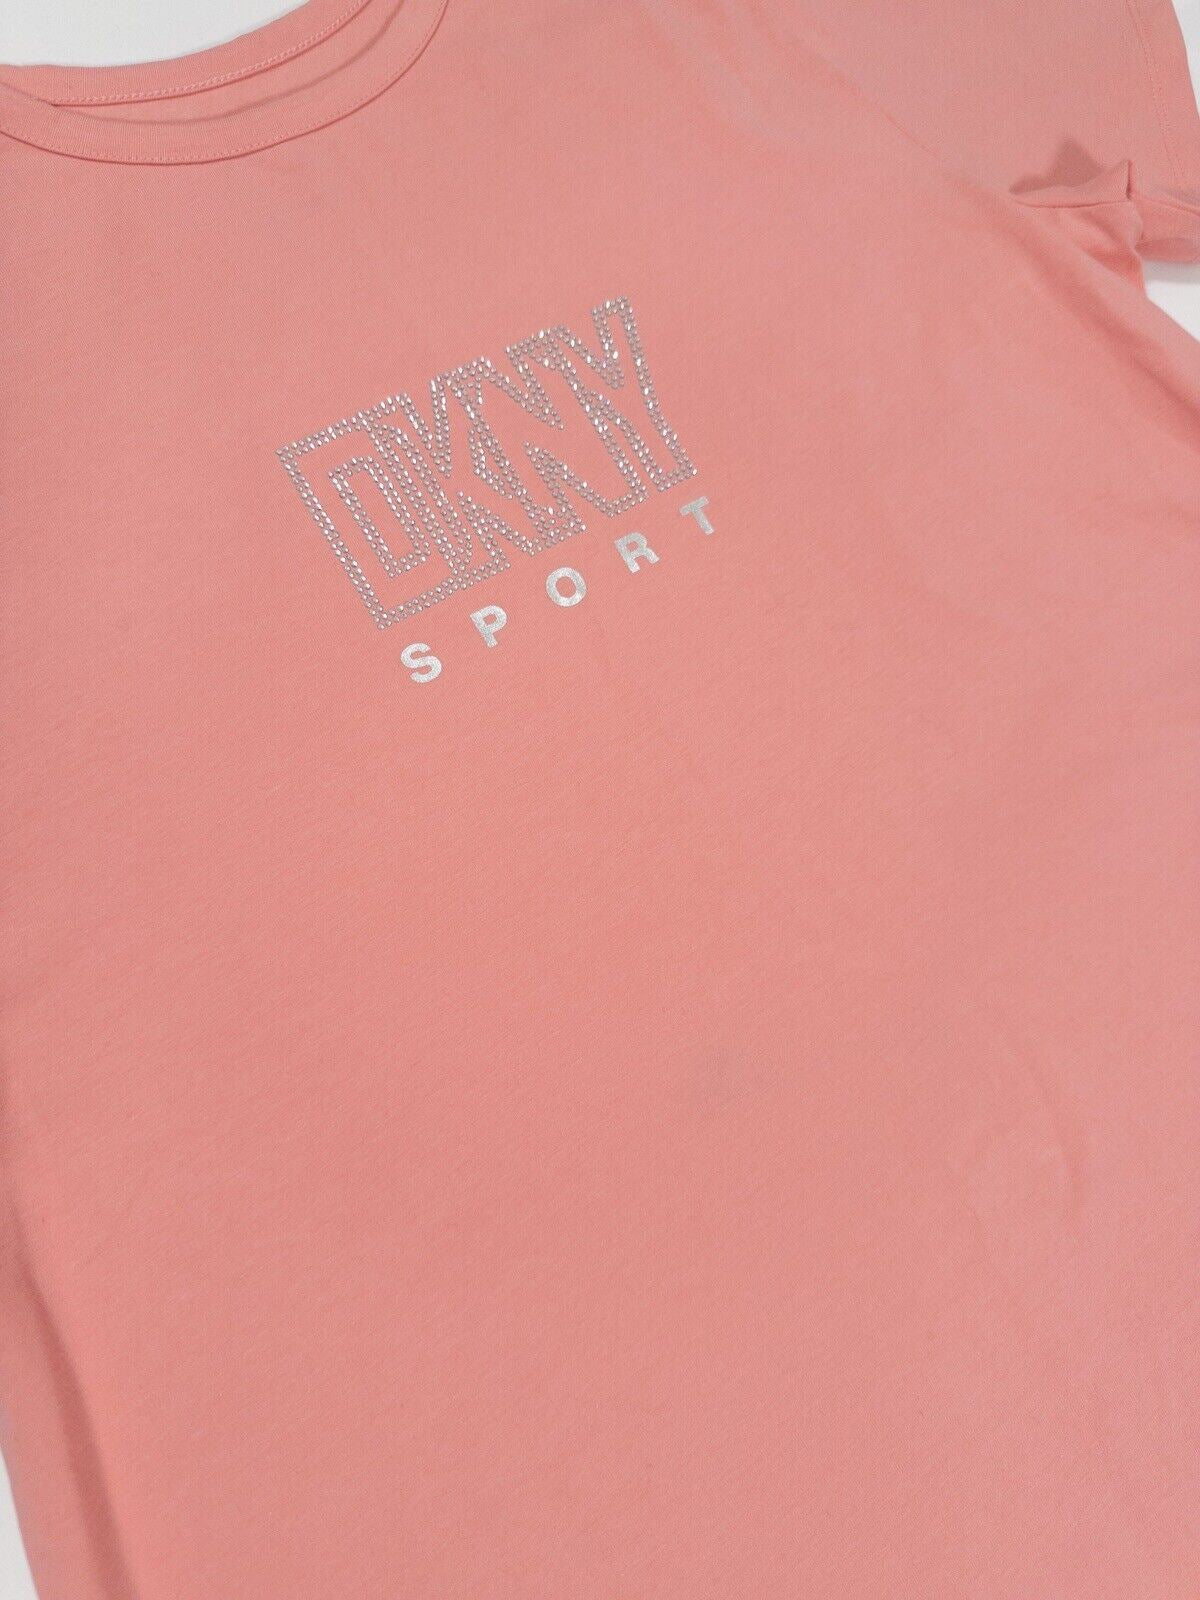 DKNY Sport Women's Pink T-Shirt Dress Short Size UK 16